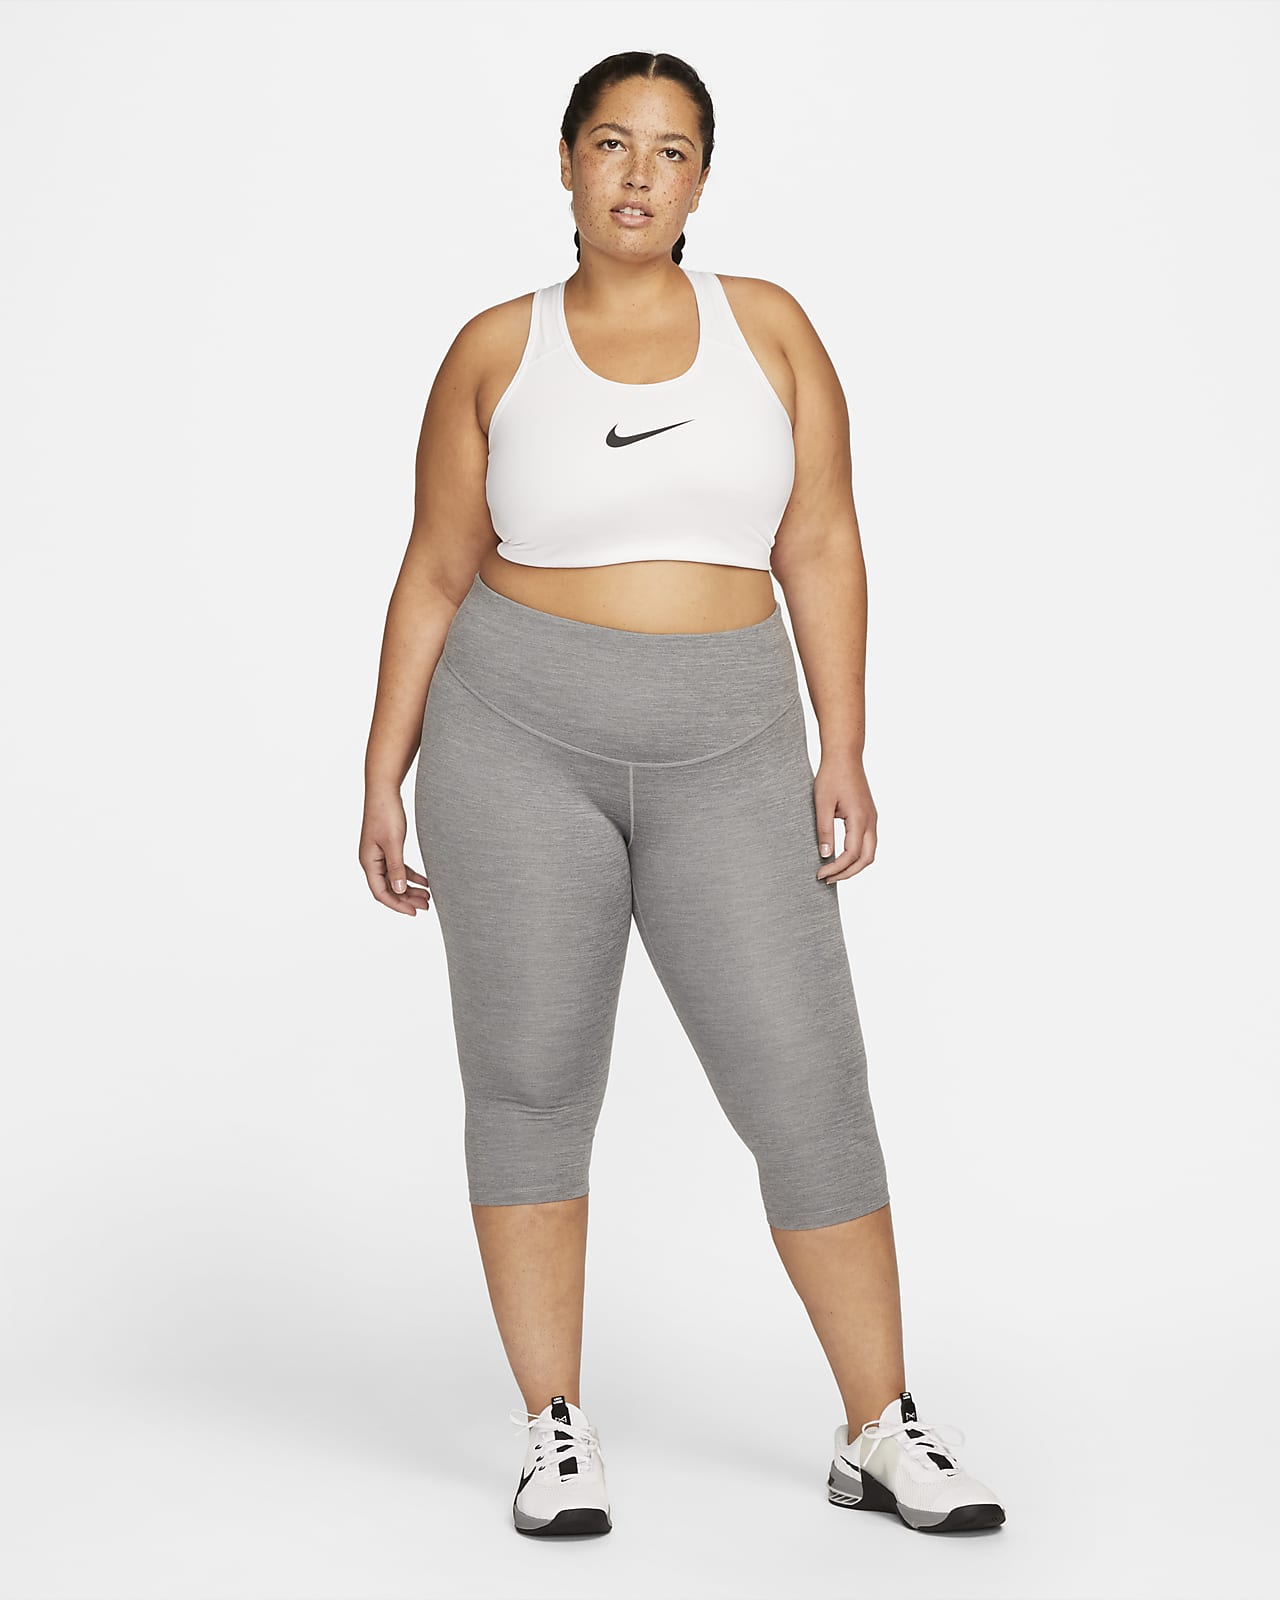 Nike Women's Mid-Rise Capri Leggings (Plus Size). Nike.com